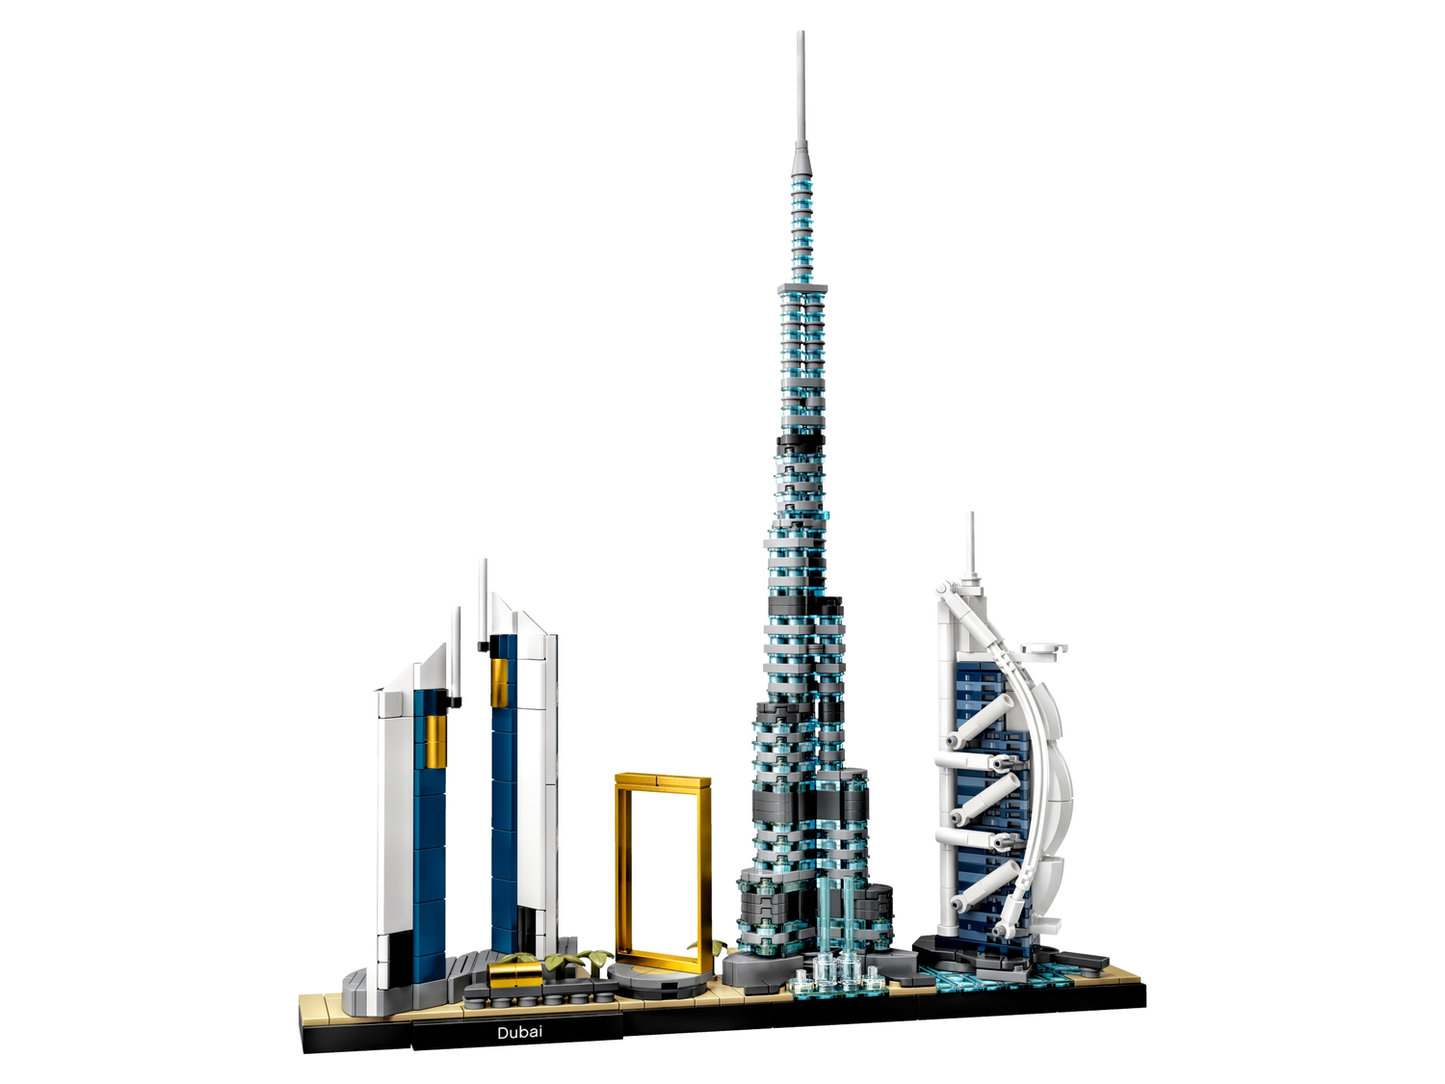 Architecture 21052 Dubai